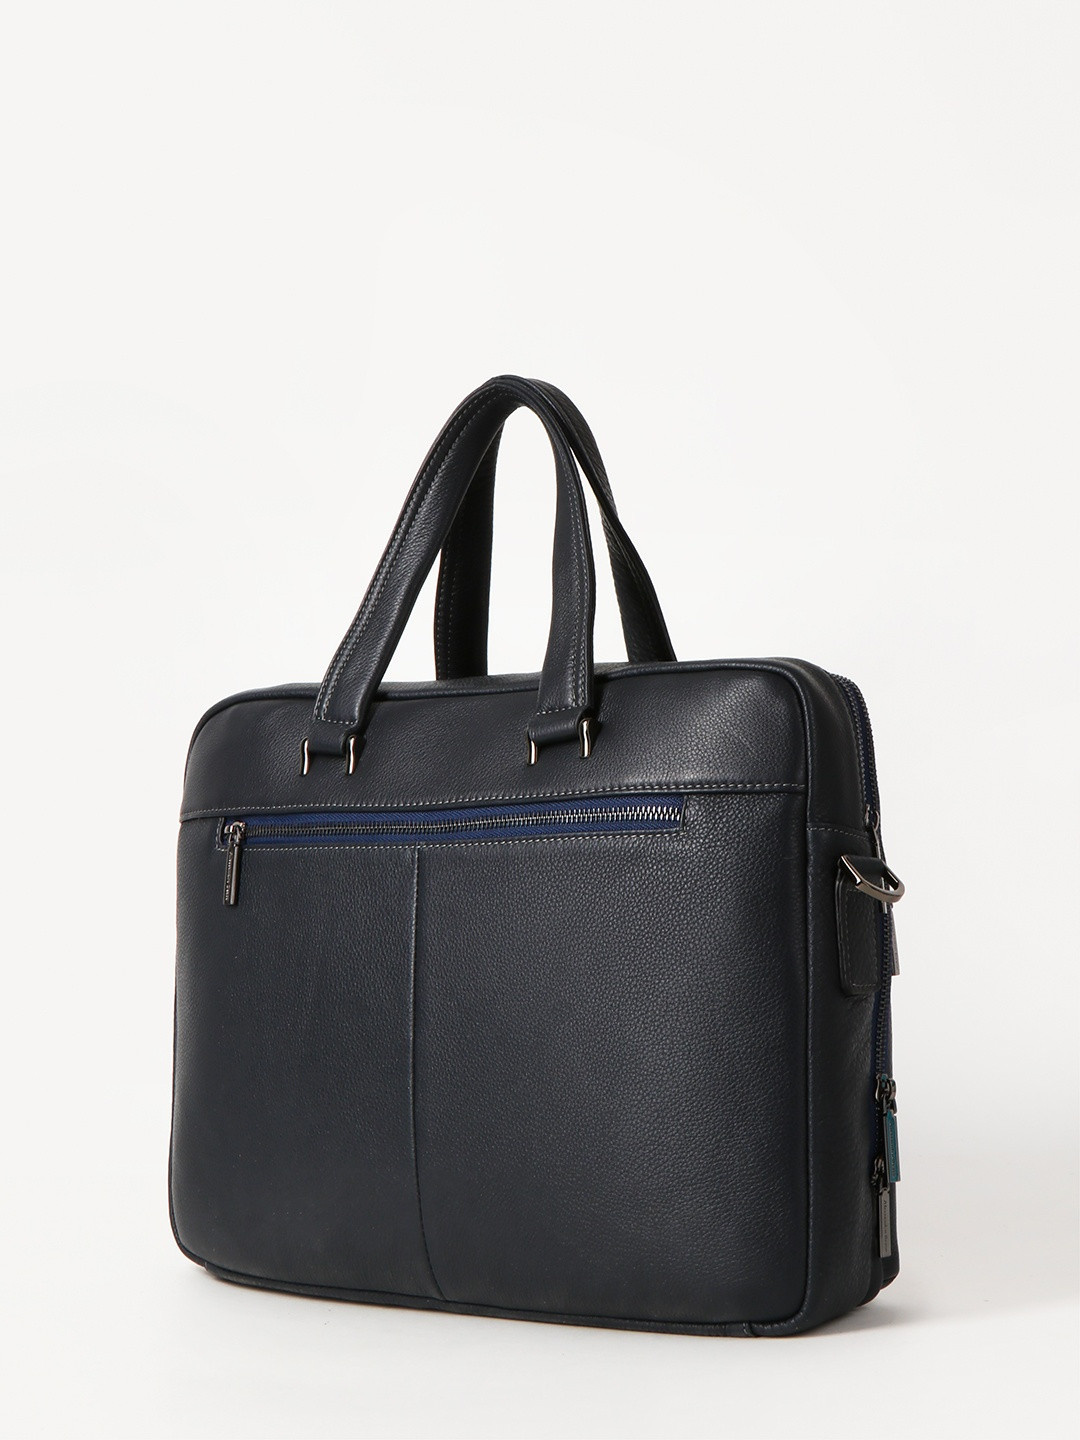 Фото Бизнес-сумка формата А4 из натуральной кожи синего цвета Деловые сумки (А4)